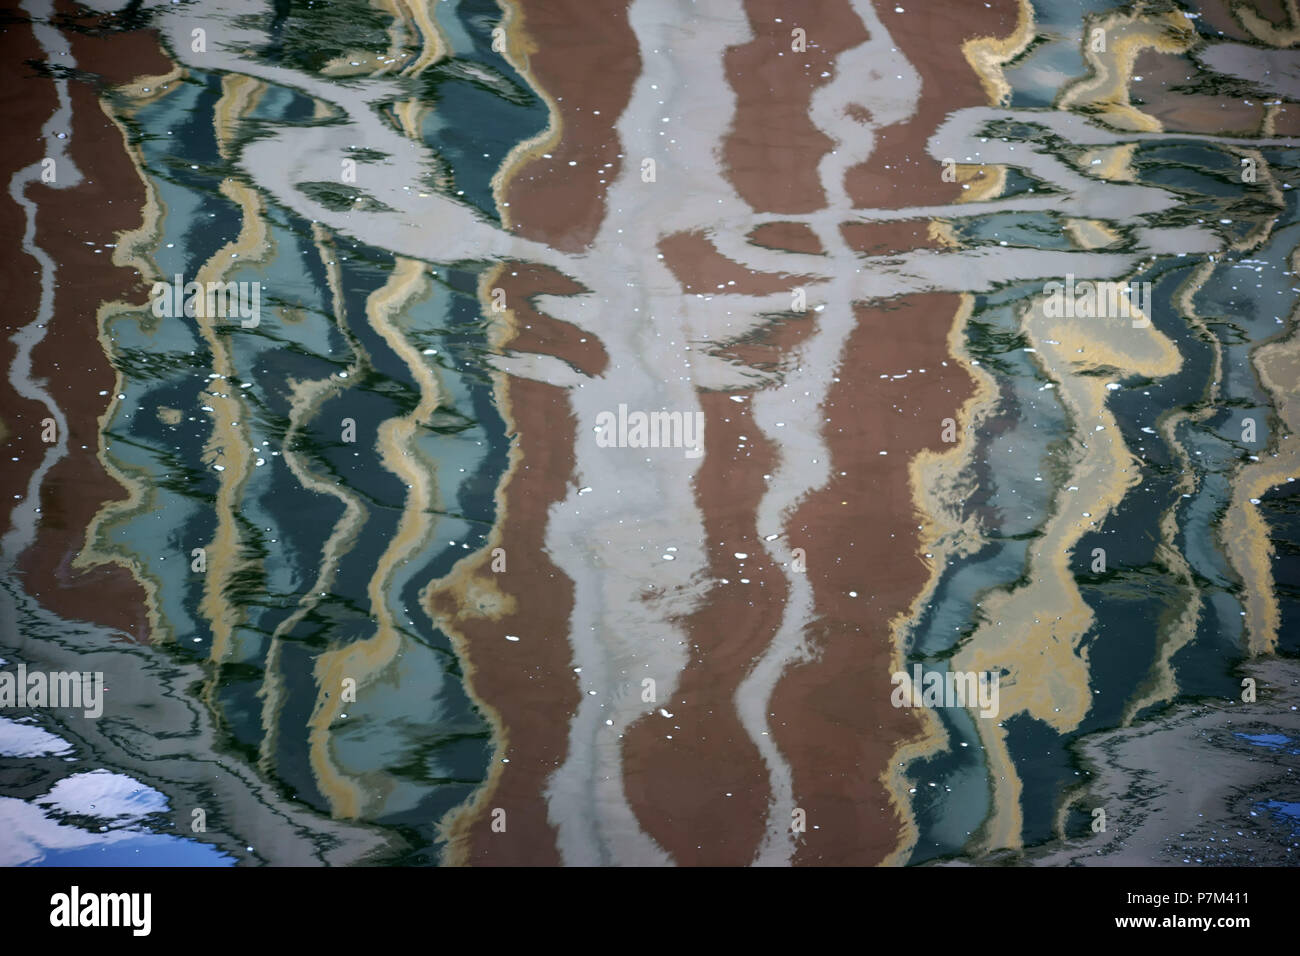 Abstrakte Überlegungen und Farbverläufe der umliegenden Infrastruktur auf der glatten Oberfläche eines Gewässers. Stockfoto